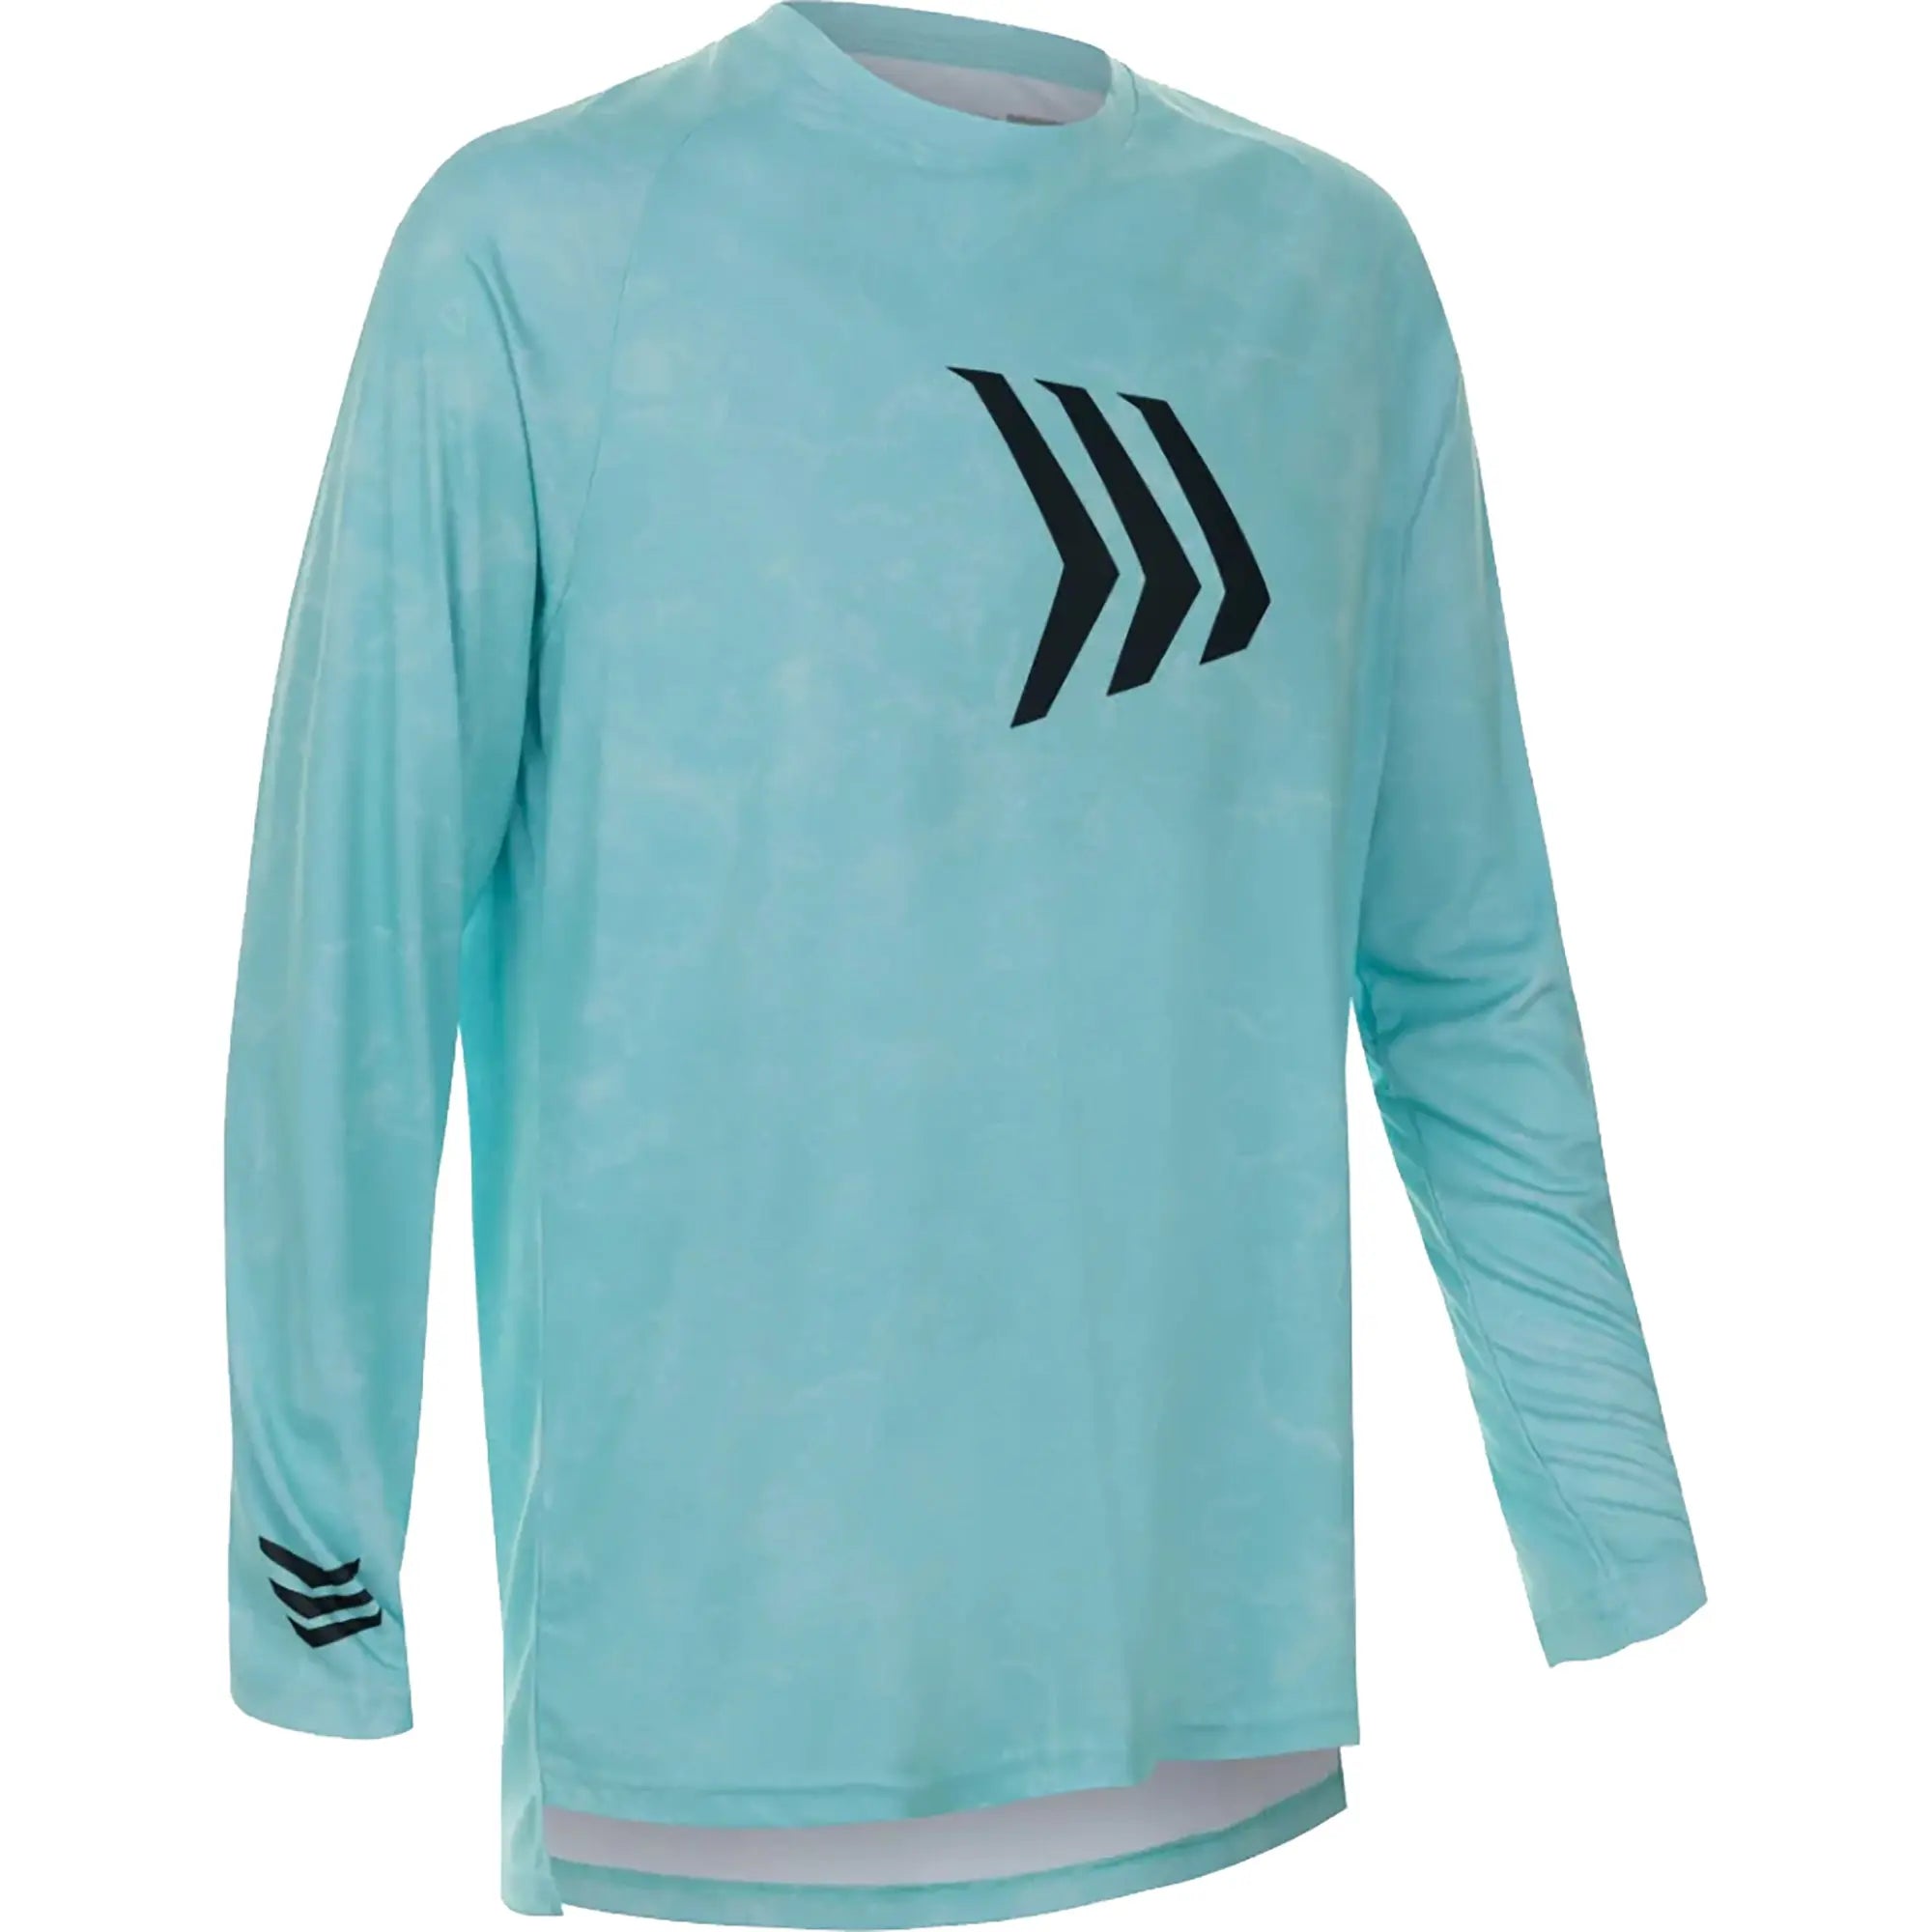 Gillz Contender Series ASSLT UV Long Sleeve T-Shirt - Aruba Blue Gillz